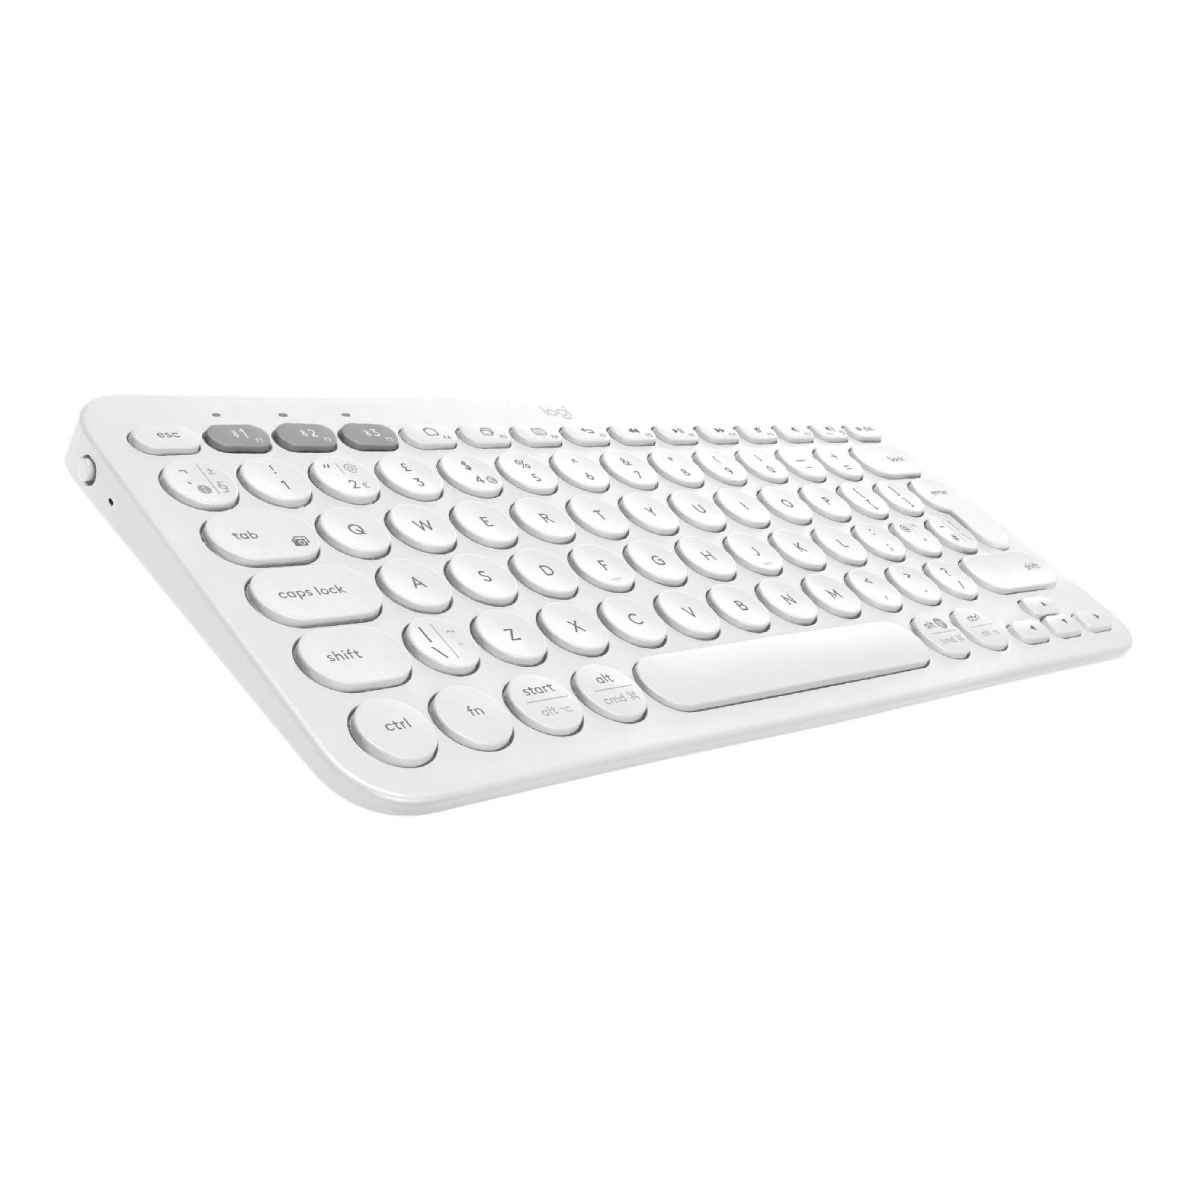 Logitech Multi-Device K380 Keyboard